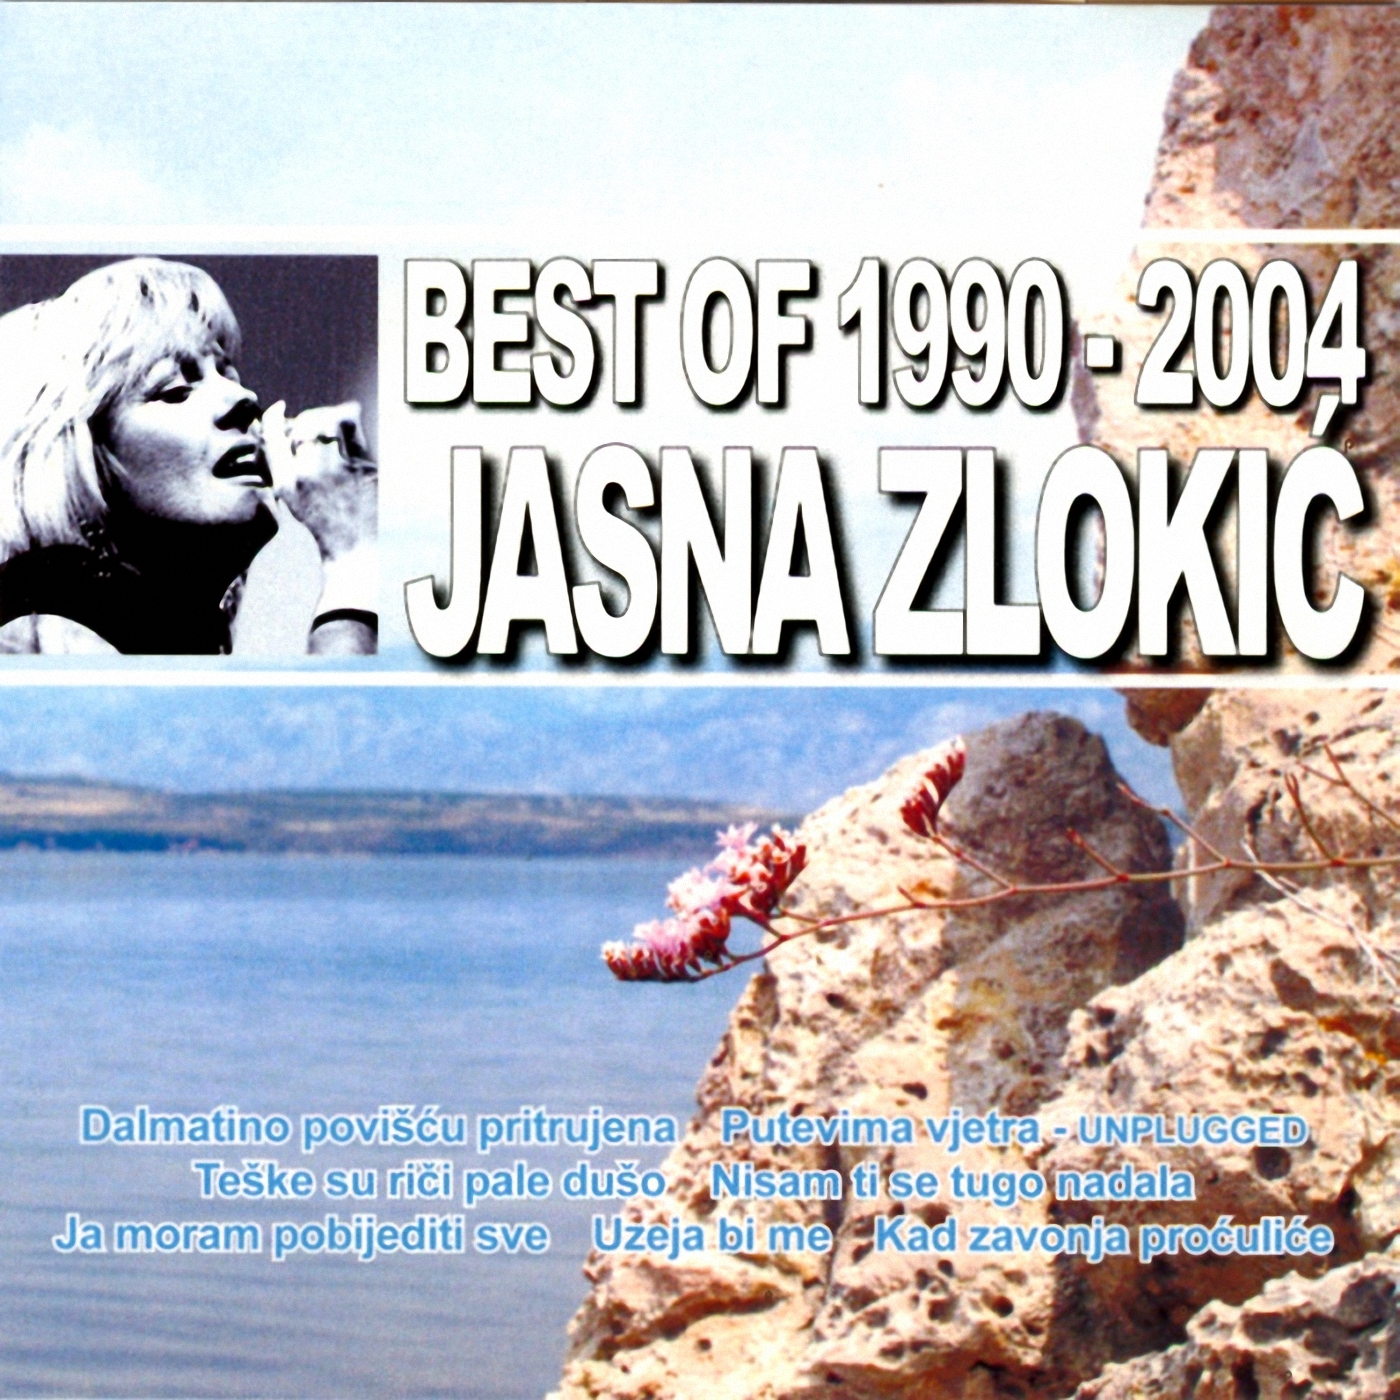 Jasna Zlokić Jasnazlokic-bestof199hnc24